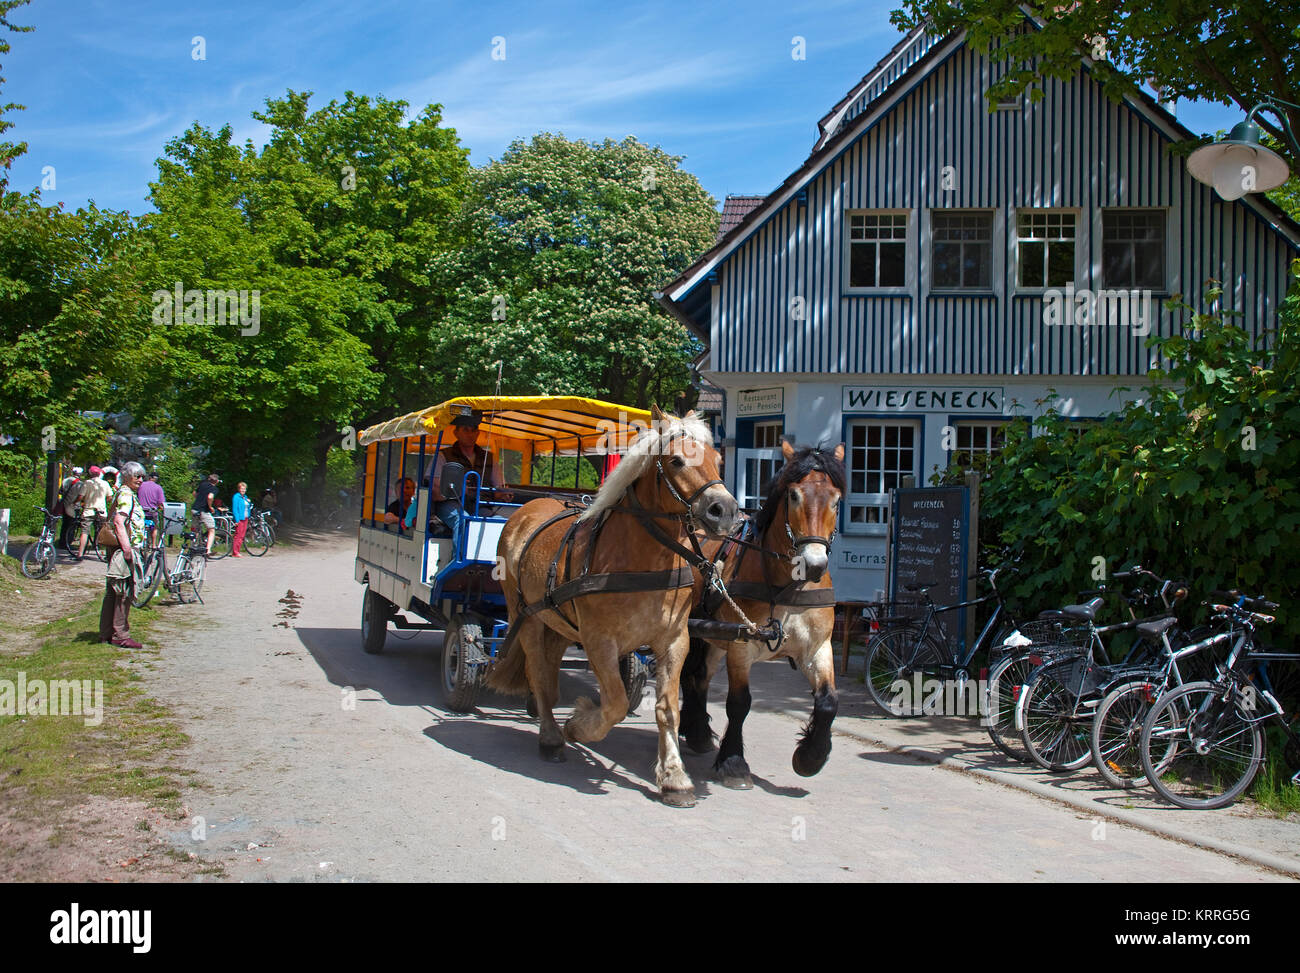 Pferdekutsche Im Dorf Kloster, Insel Hiddensee, Mecklenburg-Vorpommern, Ostsee, Deutschland, Europa Stockfoto